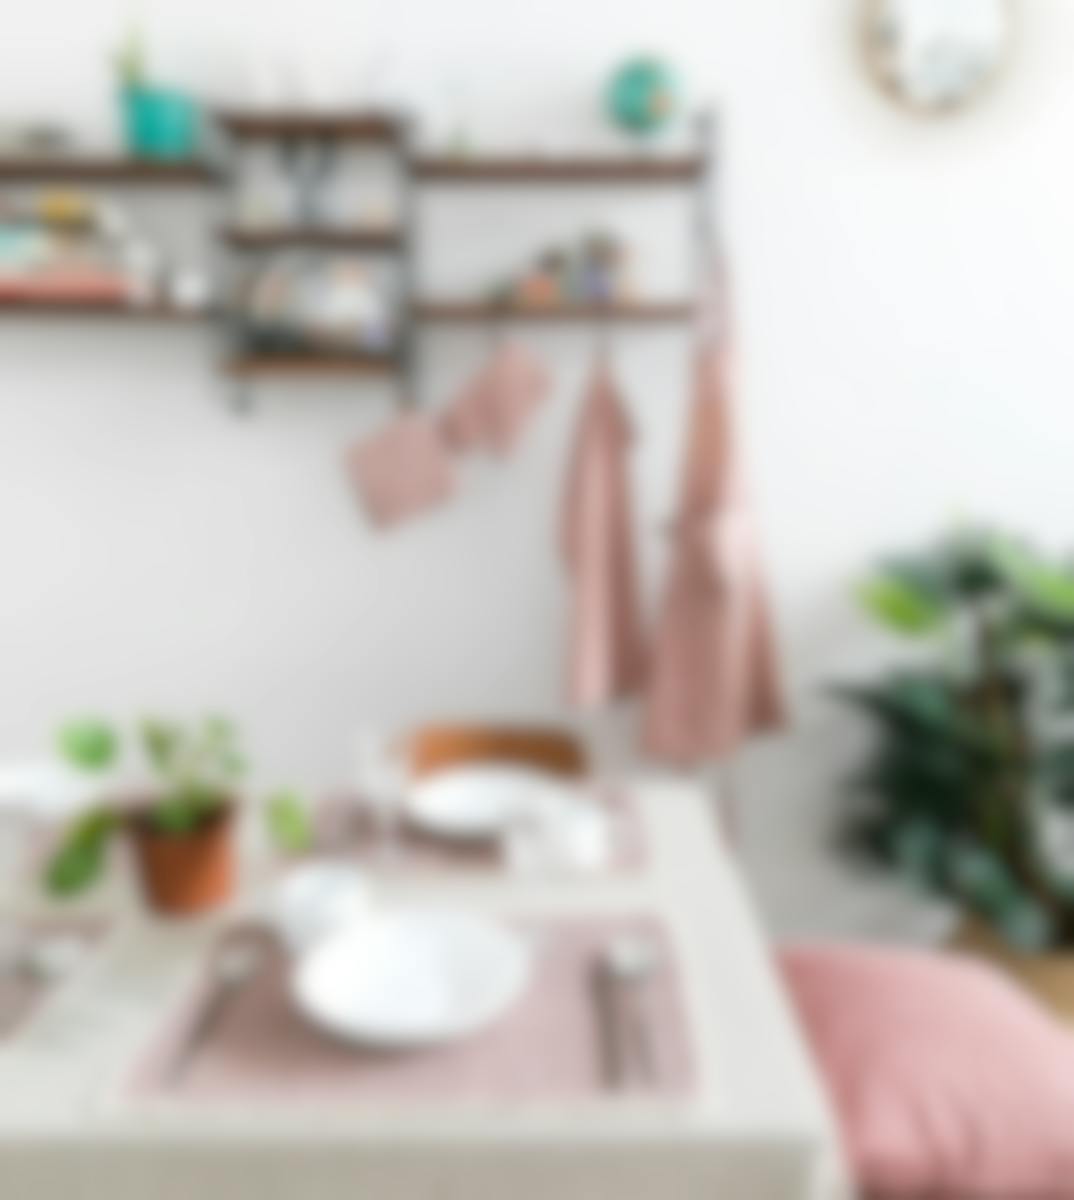 Tiseco Home Studio keukenhanddoek Myrna Pink 50 x 70 cm set van 3